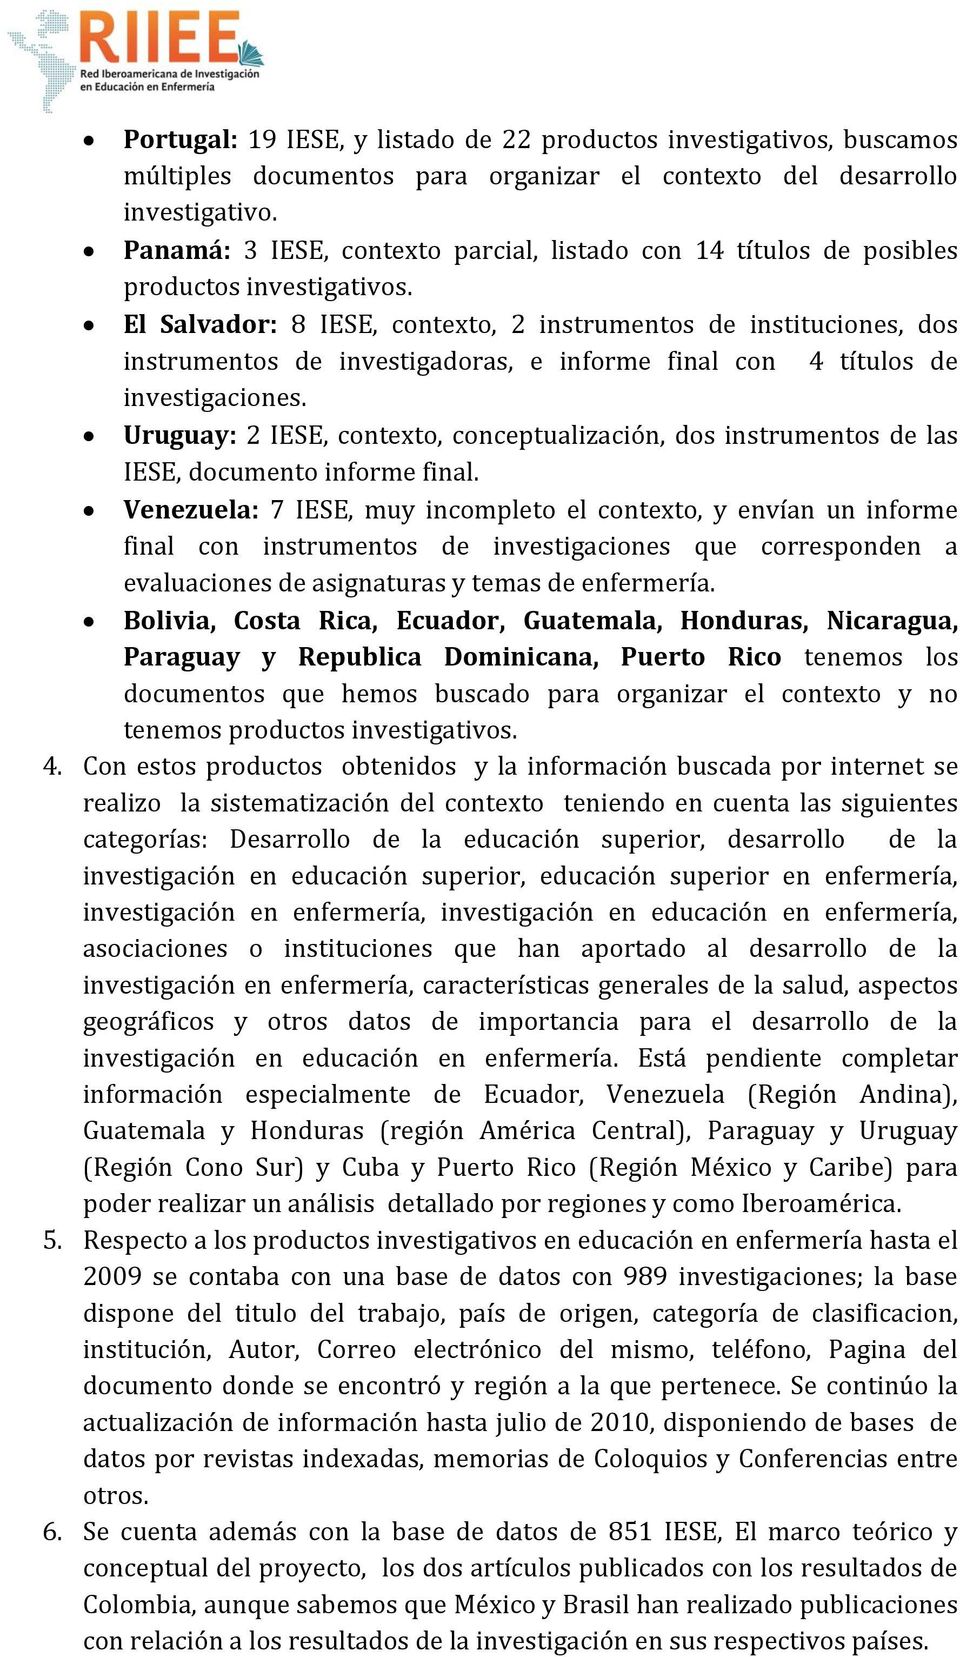 El Salvador: 8 IESE, contexto, 2 instrumentos de instituciones, dos instrumentos de investigadoras, e informe final con 4 títulos de investigaciones.